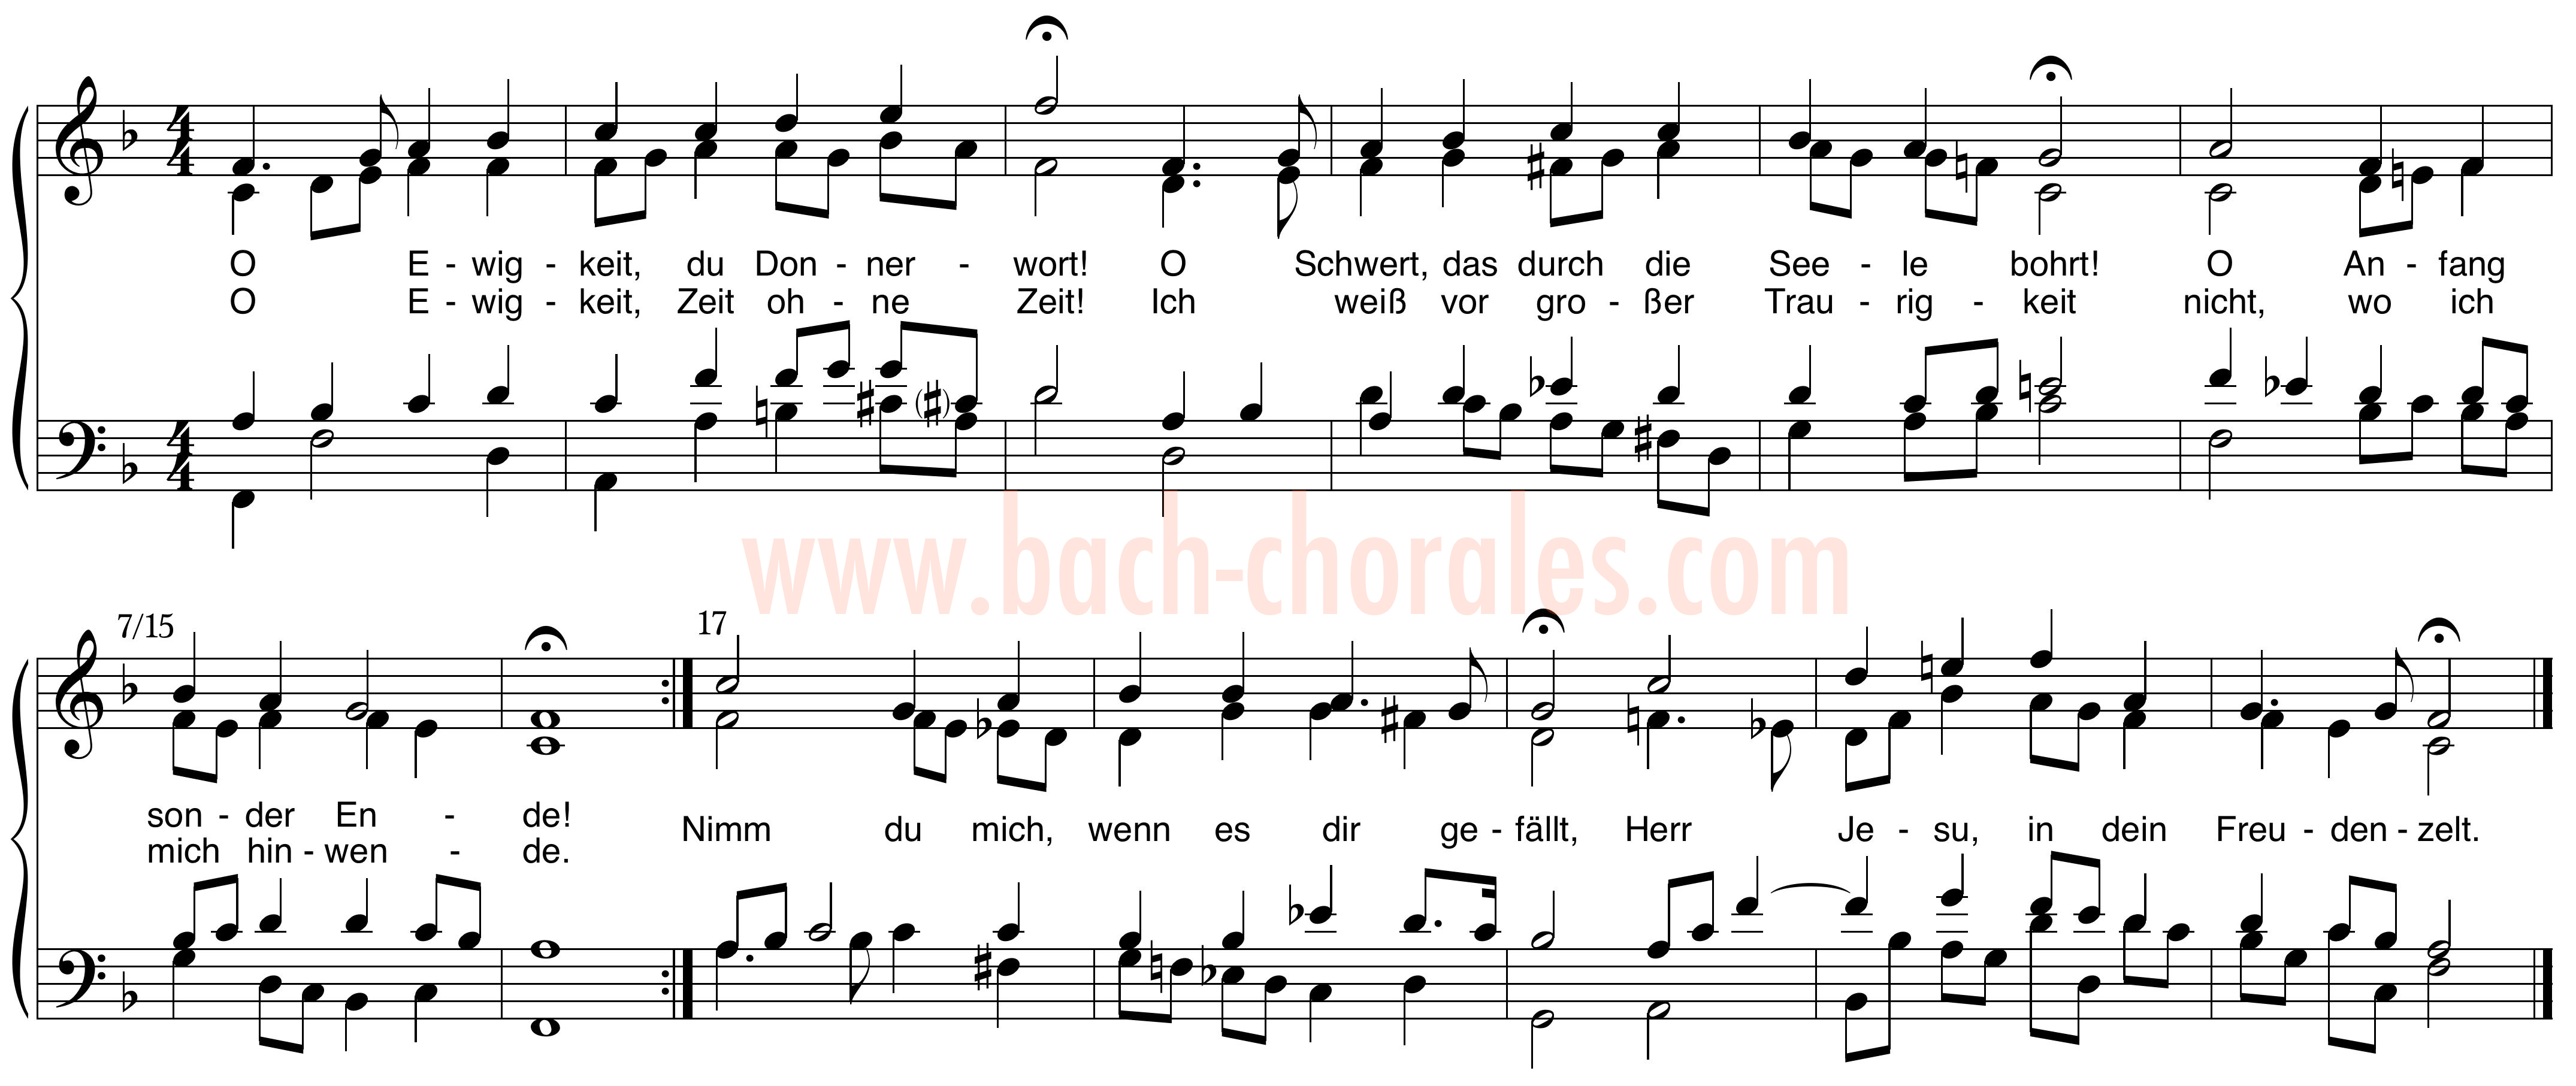 notenbeeld BWV 397 op https://www.bach-chorales.com/